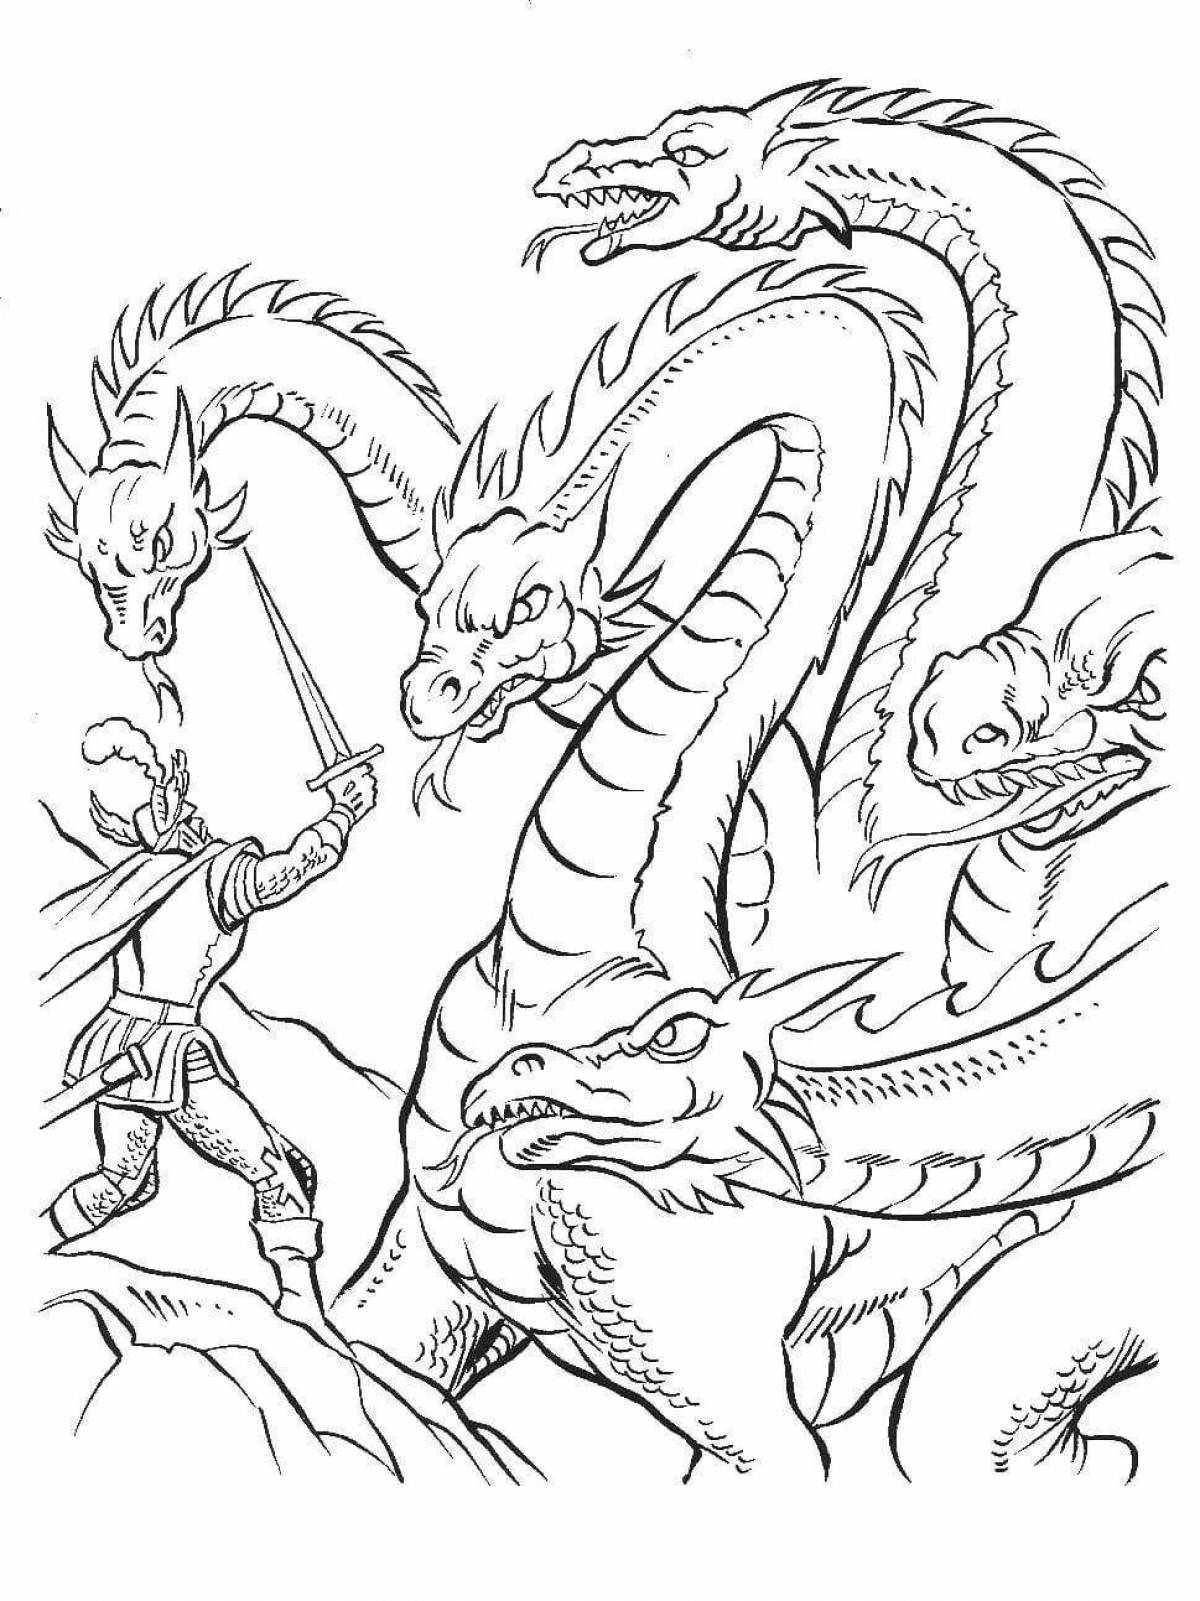 Royal three-headed dragon coloring page